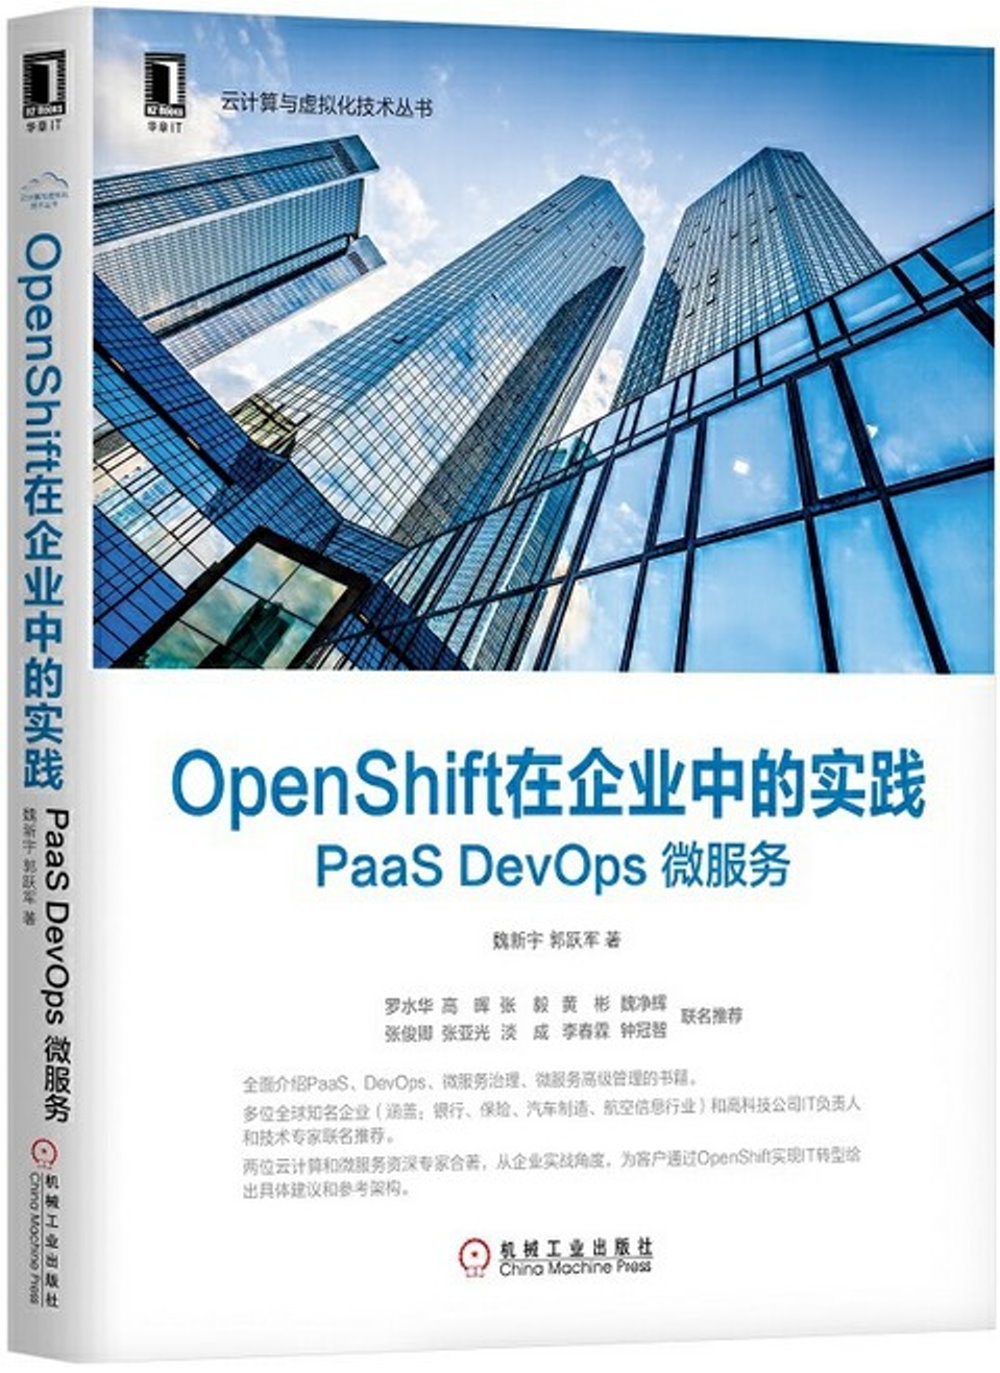 OpenShift在企業中的實踐: PaaS DevOps 微服務